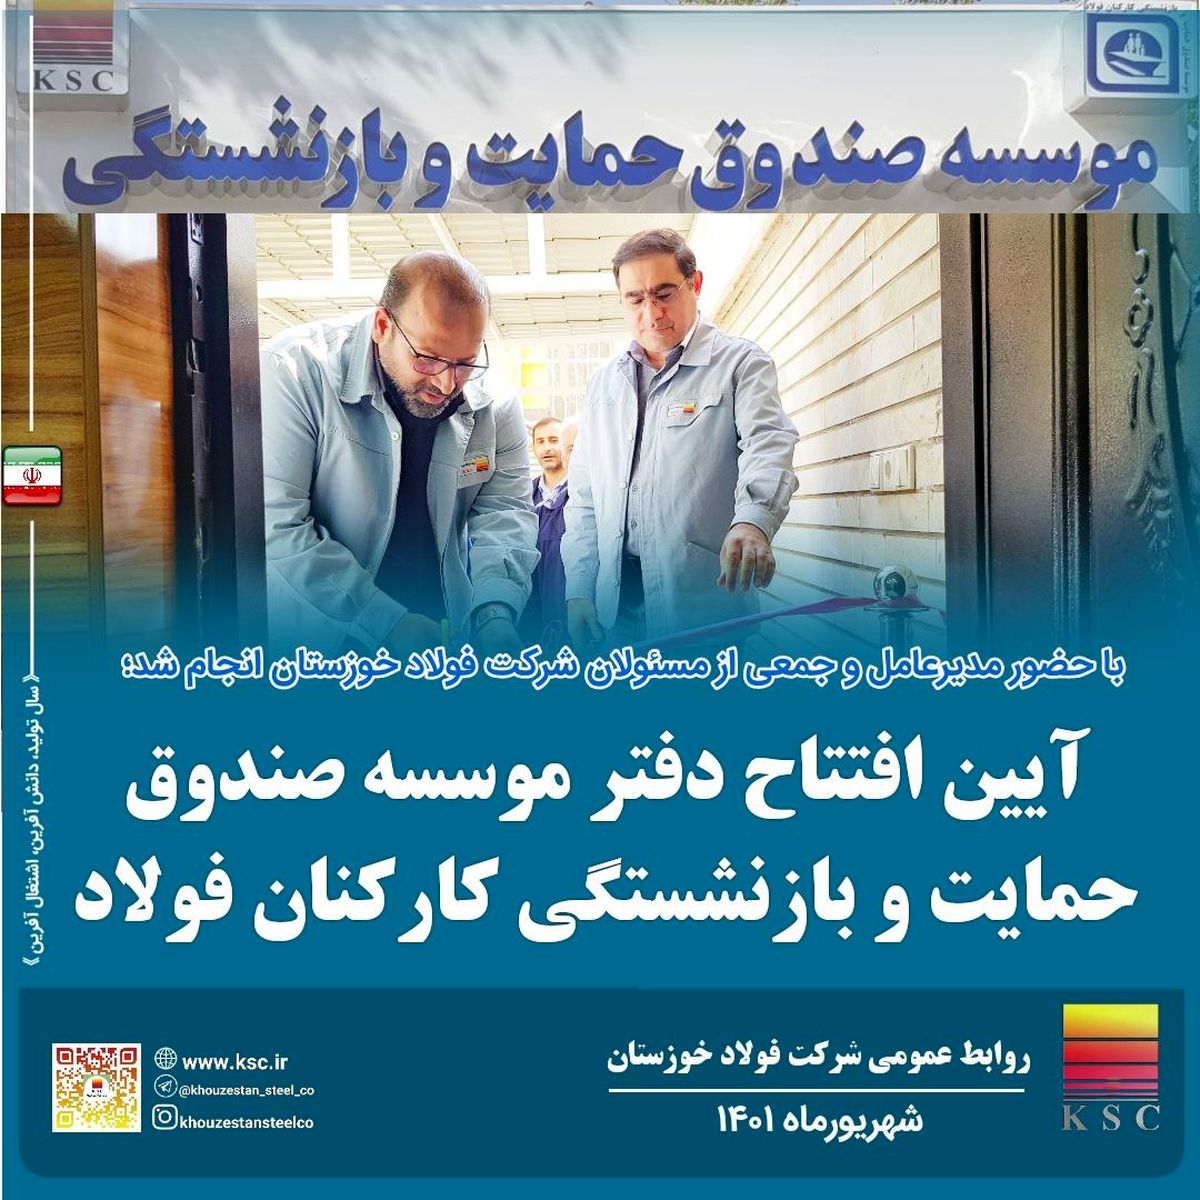 عامل مهم در موفقیت سیمیدکو اعتماد به دانش متخصصین جوان ایرانی است